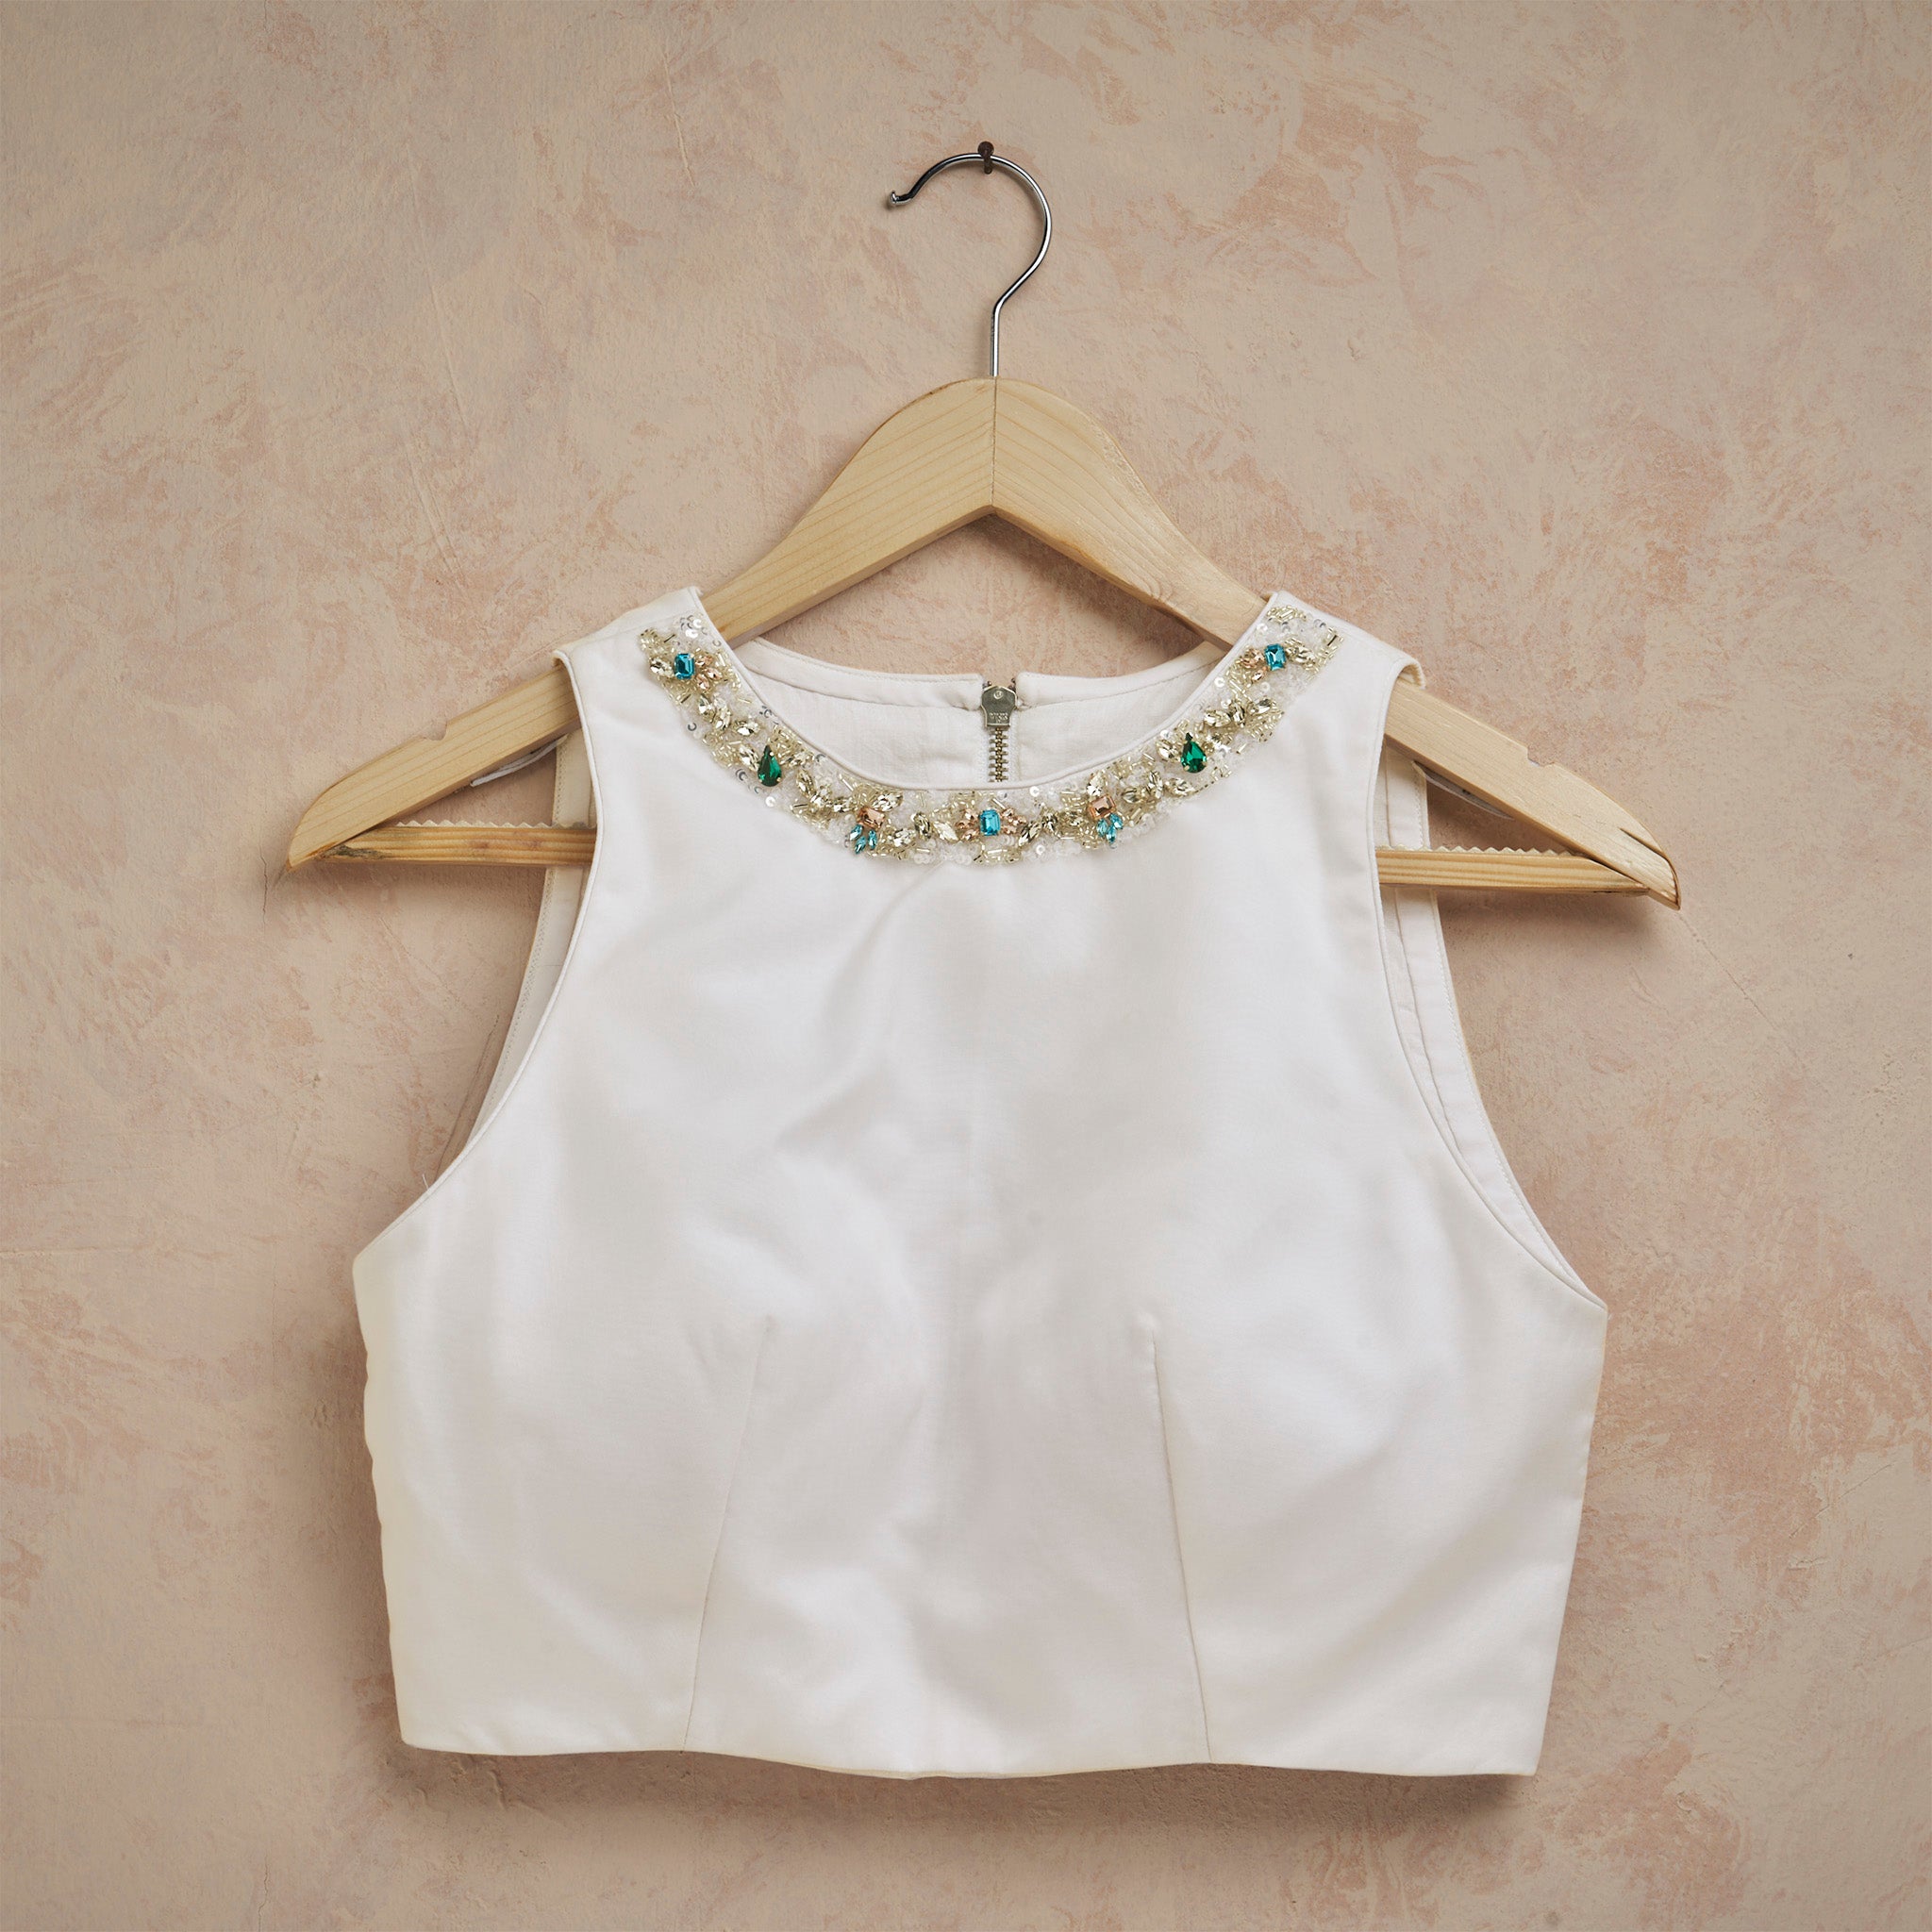 White organza blouse